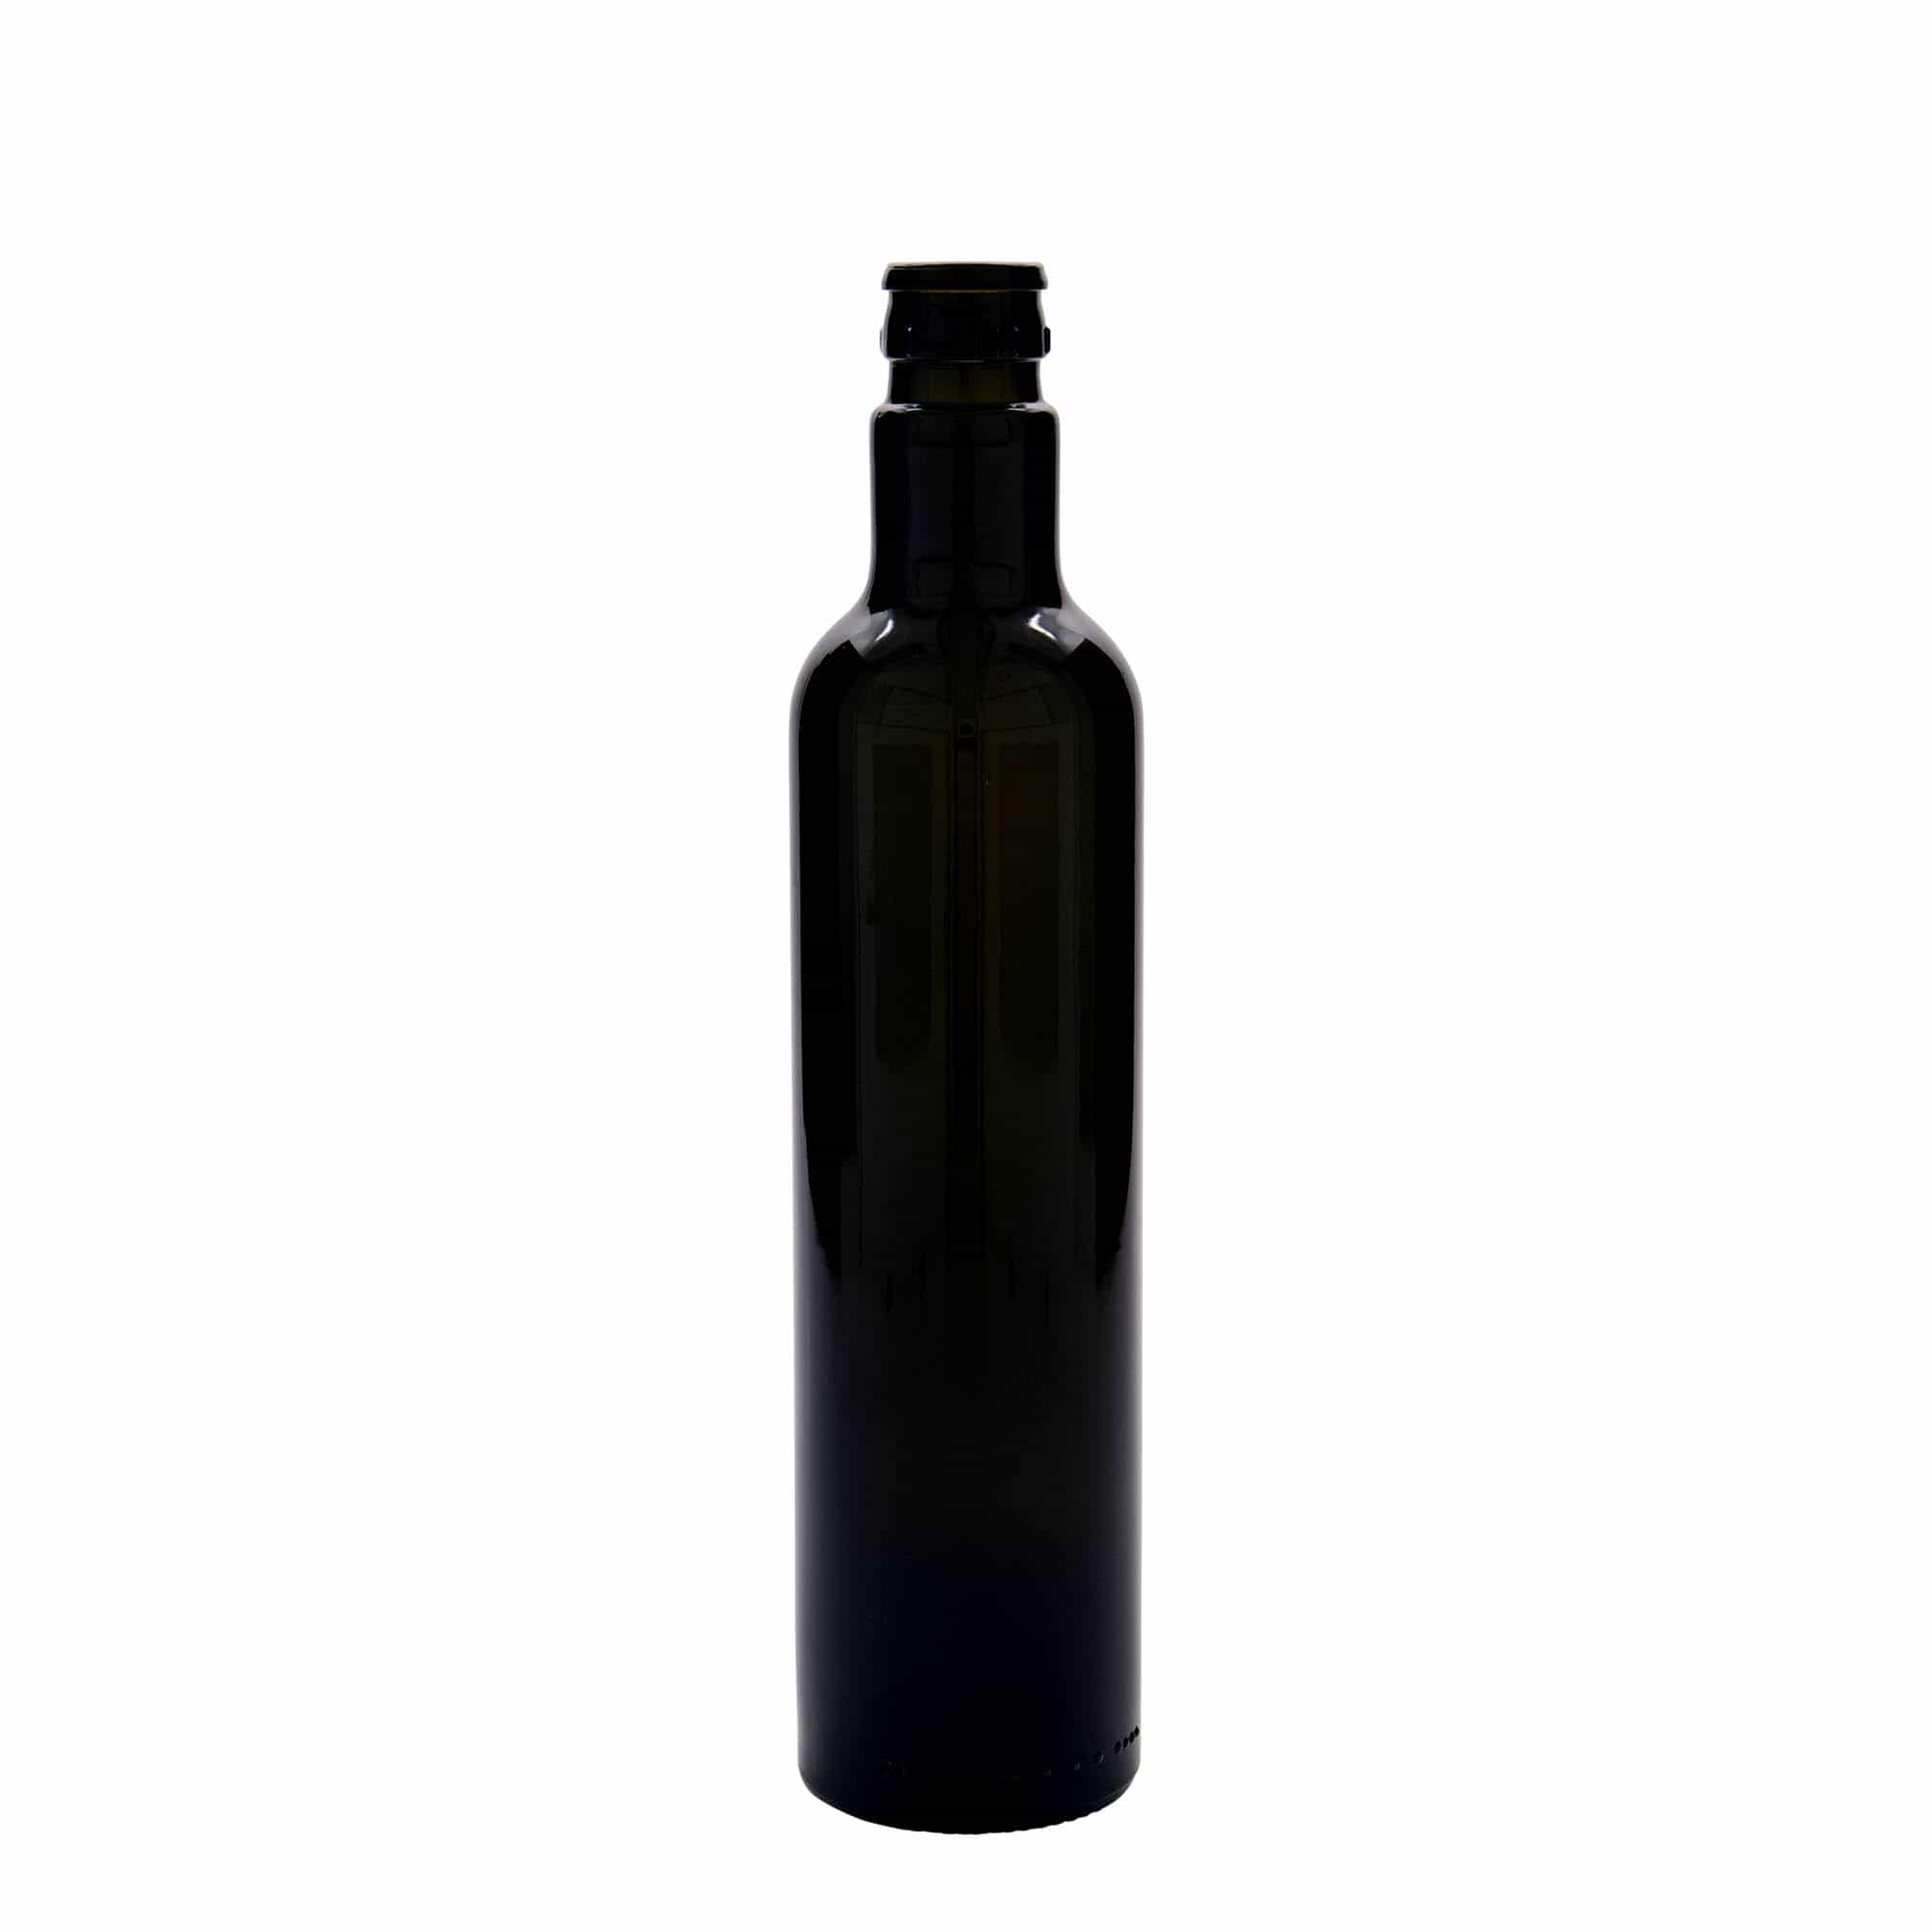 500 ml eddike-/olieflaske 'Willy New', glas, antikgrøn, åbning: DOP